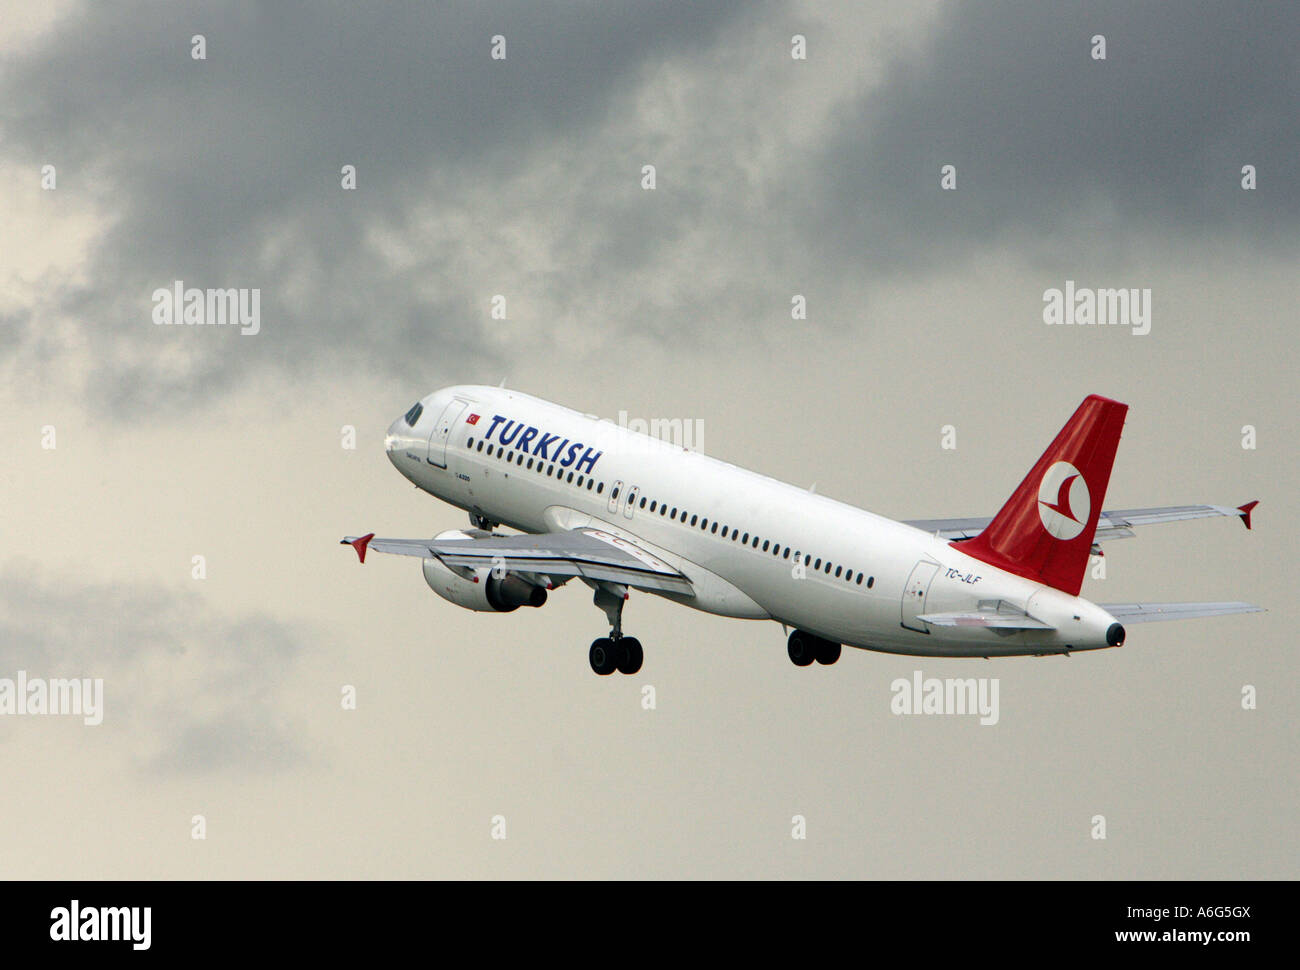 Avion de la compagnie aérienne turque dans le ciel Banque D'Images